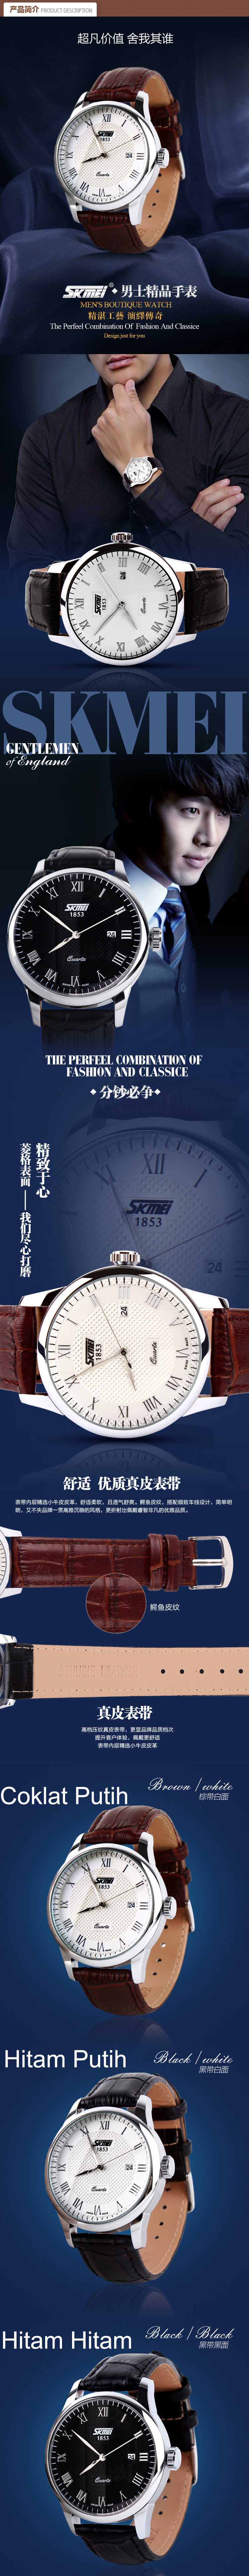 jual jam tangan pria merk skmei 1853 dengan desain casual terbuat dari bahan kulit yang dipadukan dengan stainless steel sangat cocok untuk anda yang ingin tampil maksimal